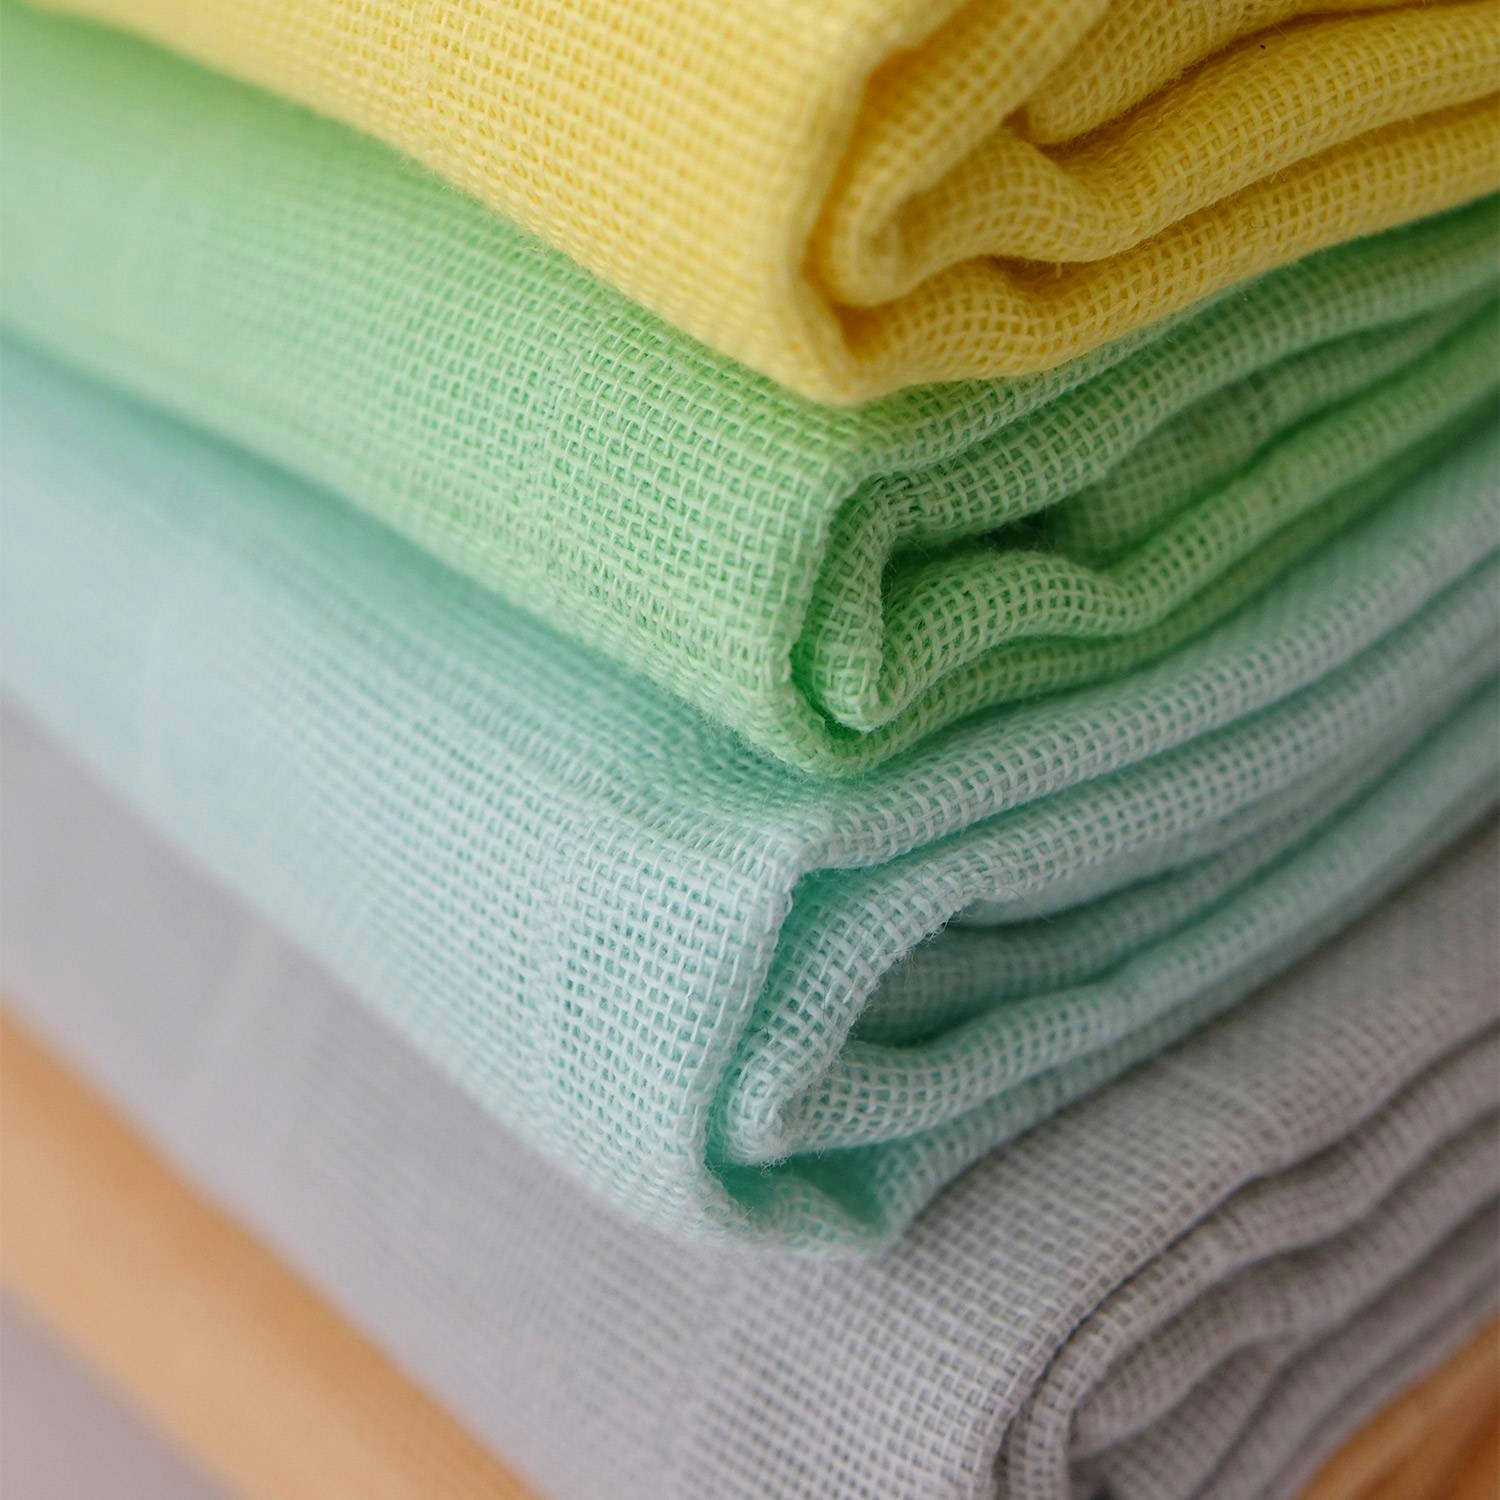 en närbild på en trave tygblöjor, i form av vikblöjor, i olika färger i ekologisk bomulsmuslin från Avo&Cado. A close-up of cloth diapers/flat diapers in different colors.